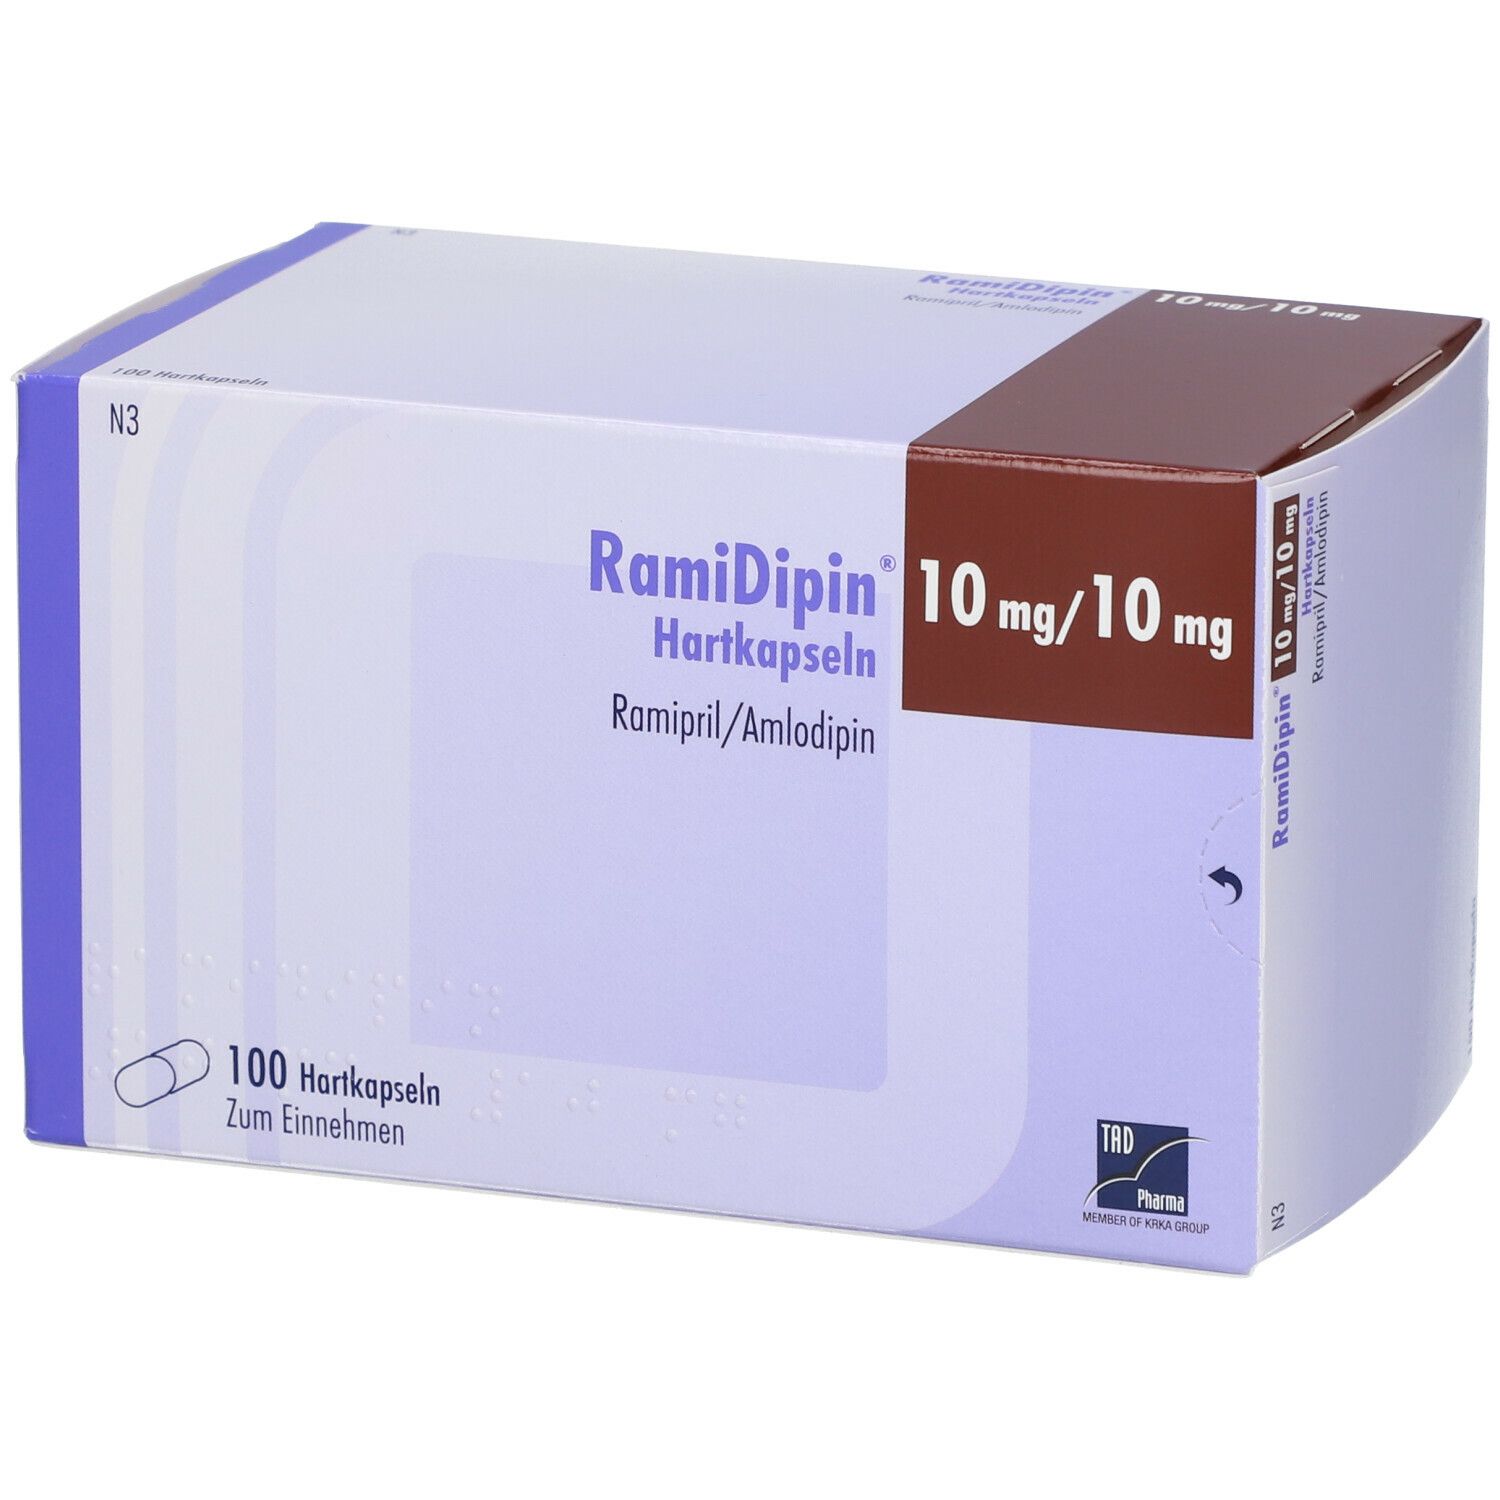 RamiDipin® 10 mg/10 mg